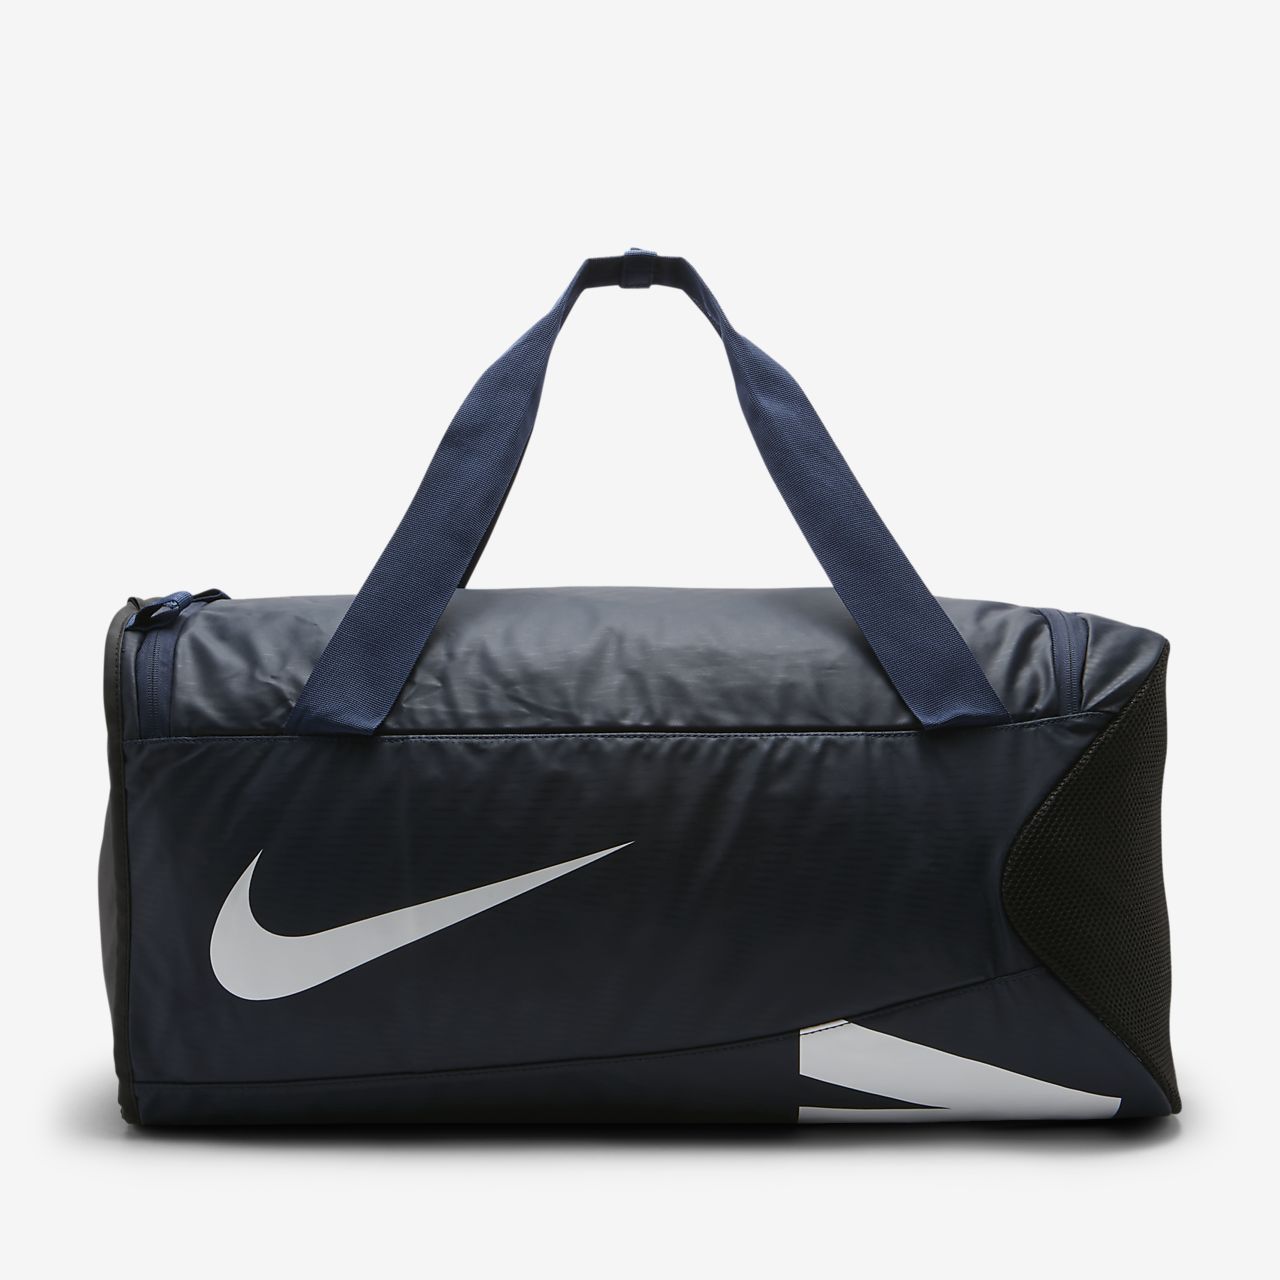 Nike Alpha Adapt Cross Body (Medium) Duffel Bag. 0 VN